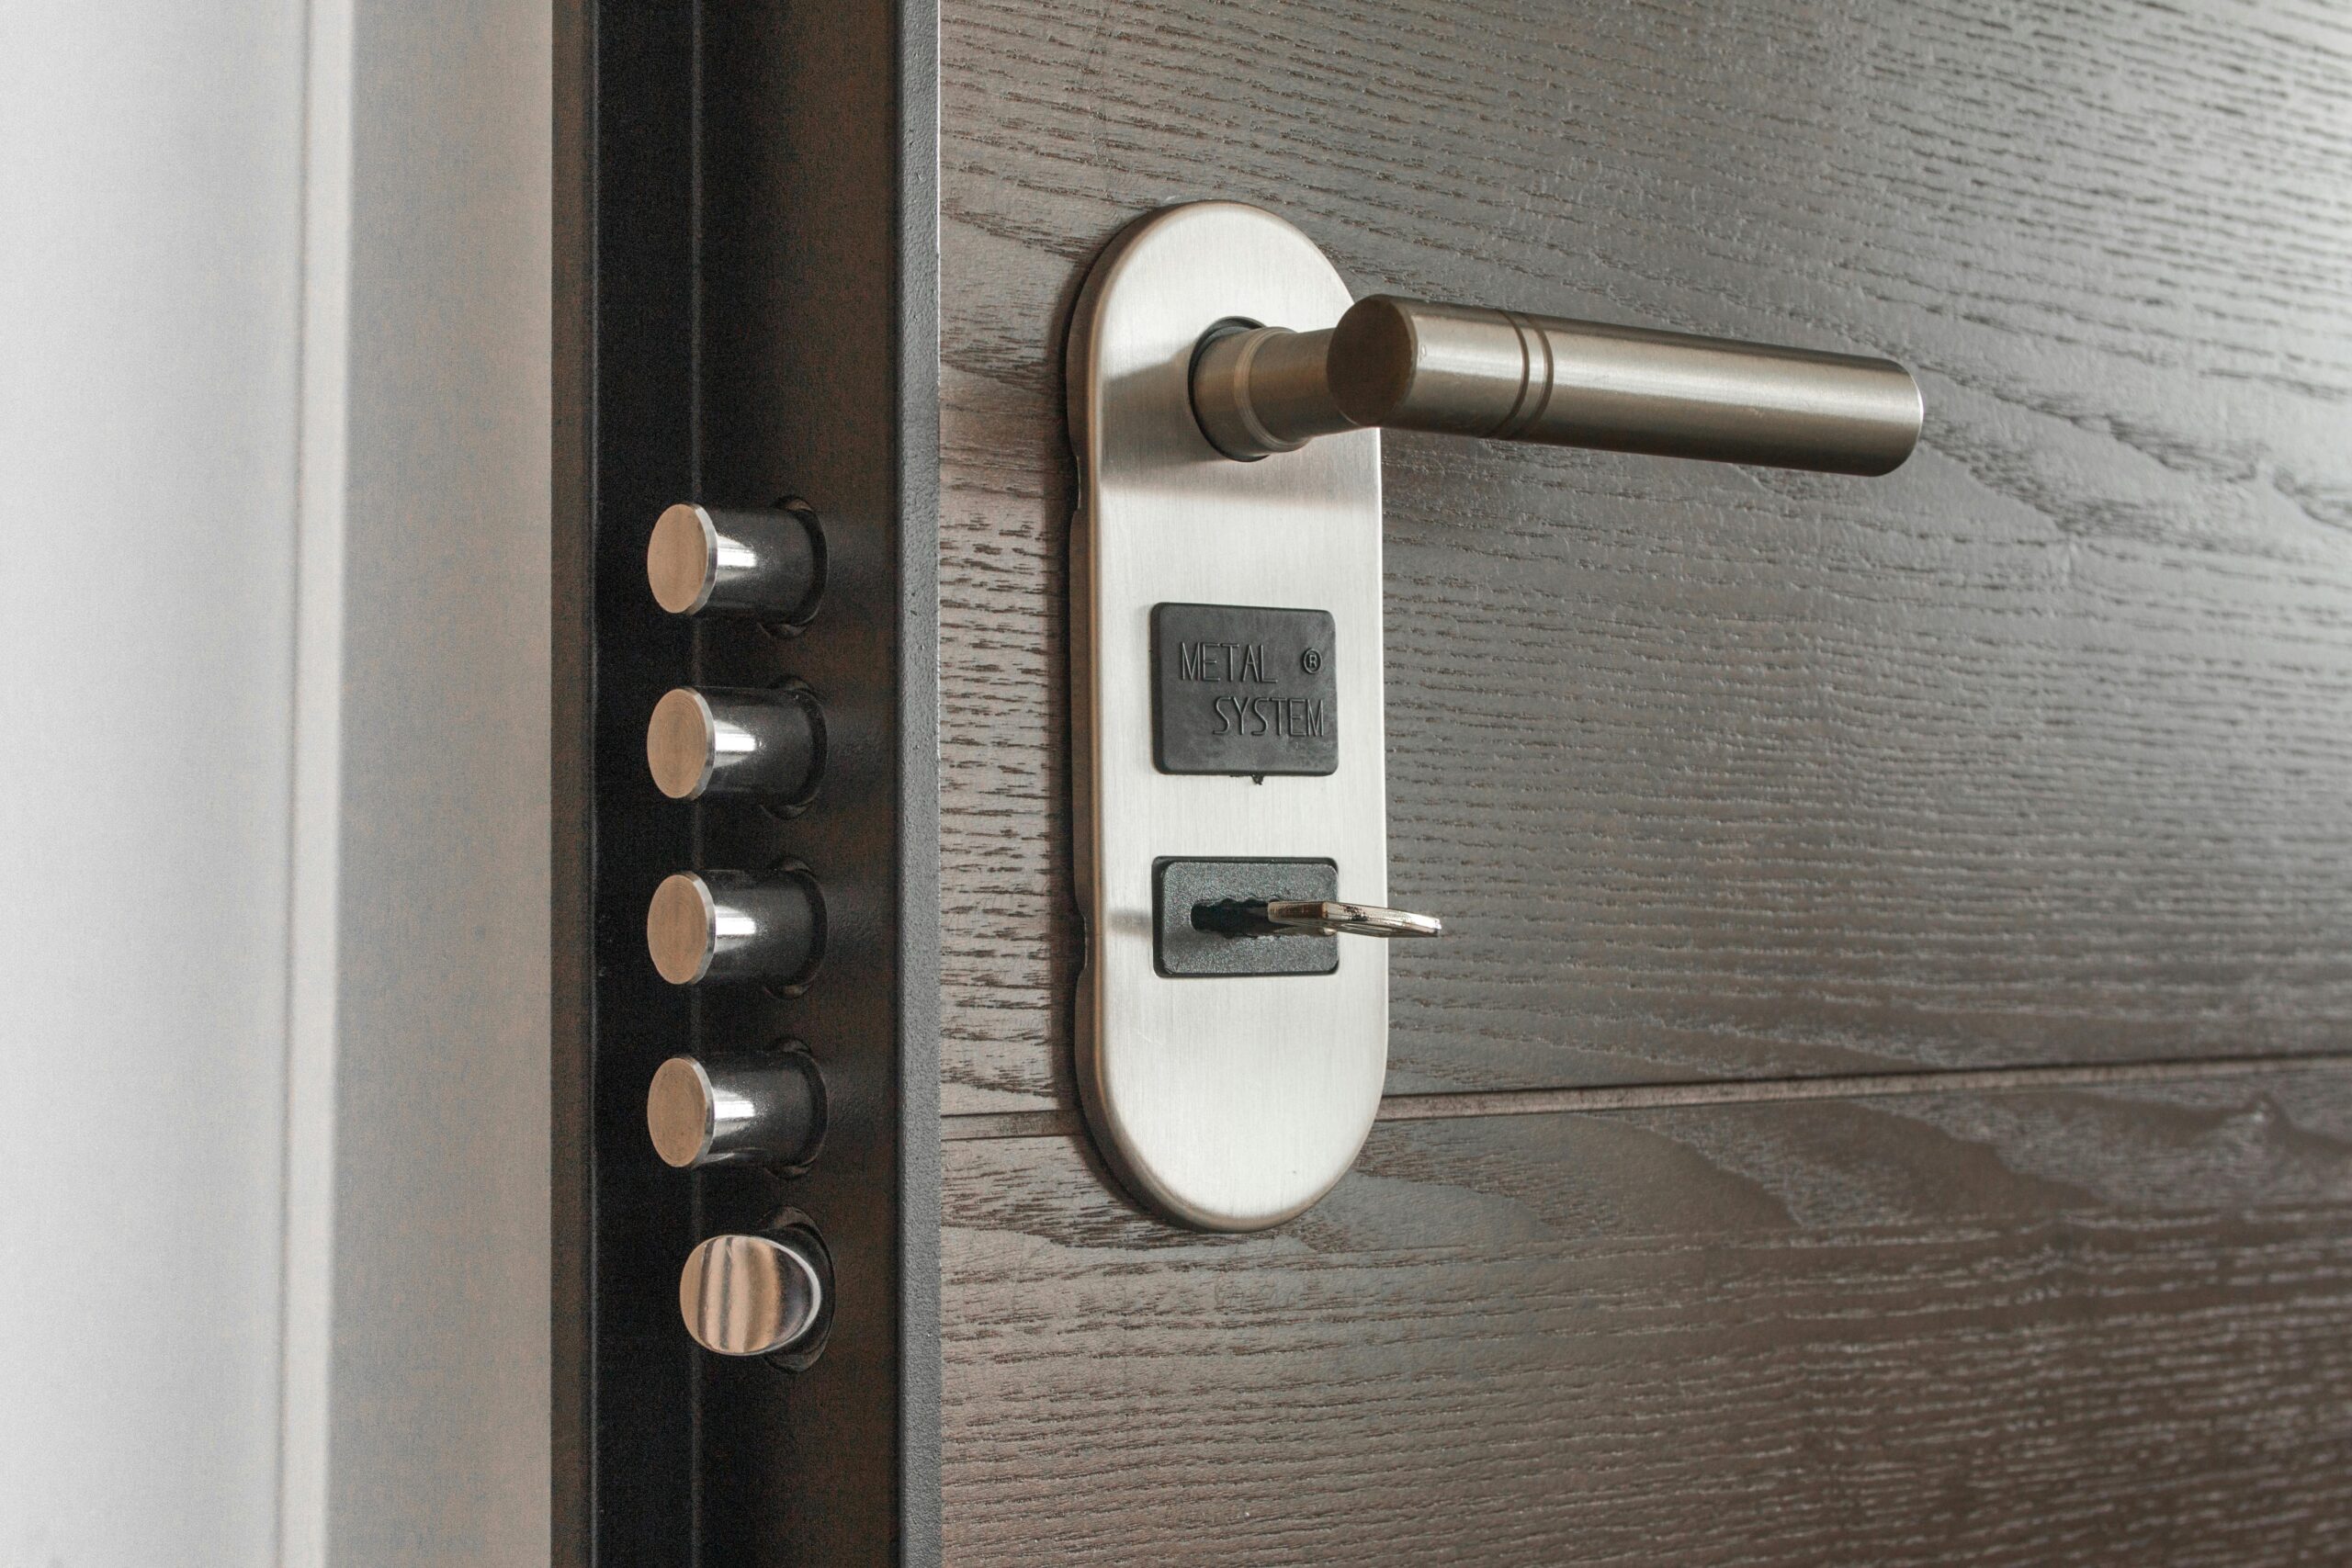 Smart door lock system using arduino tinkercad